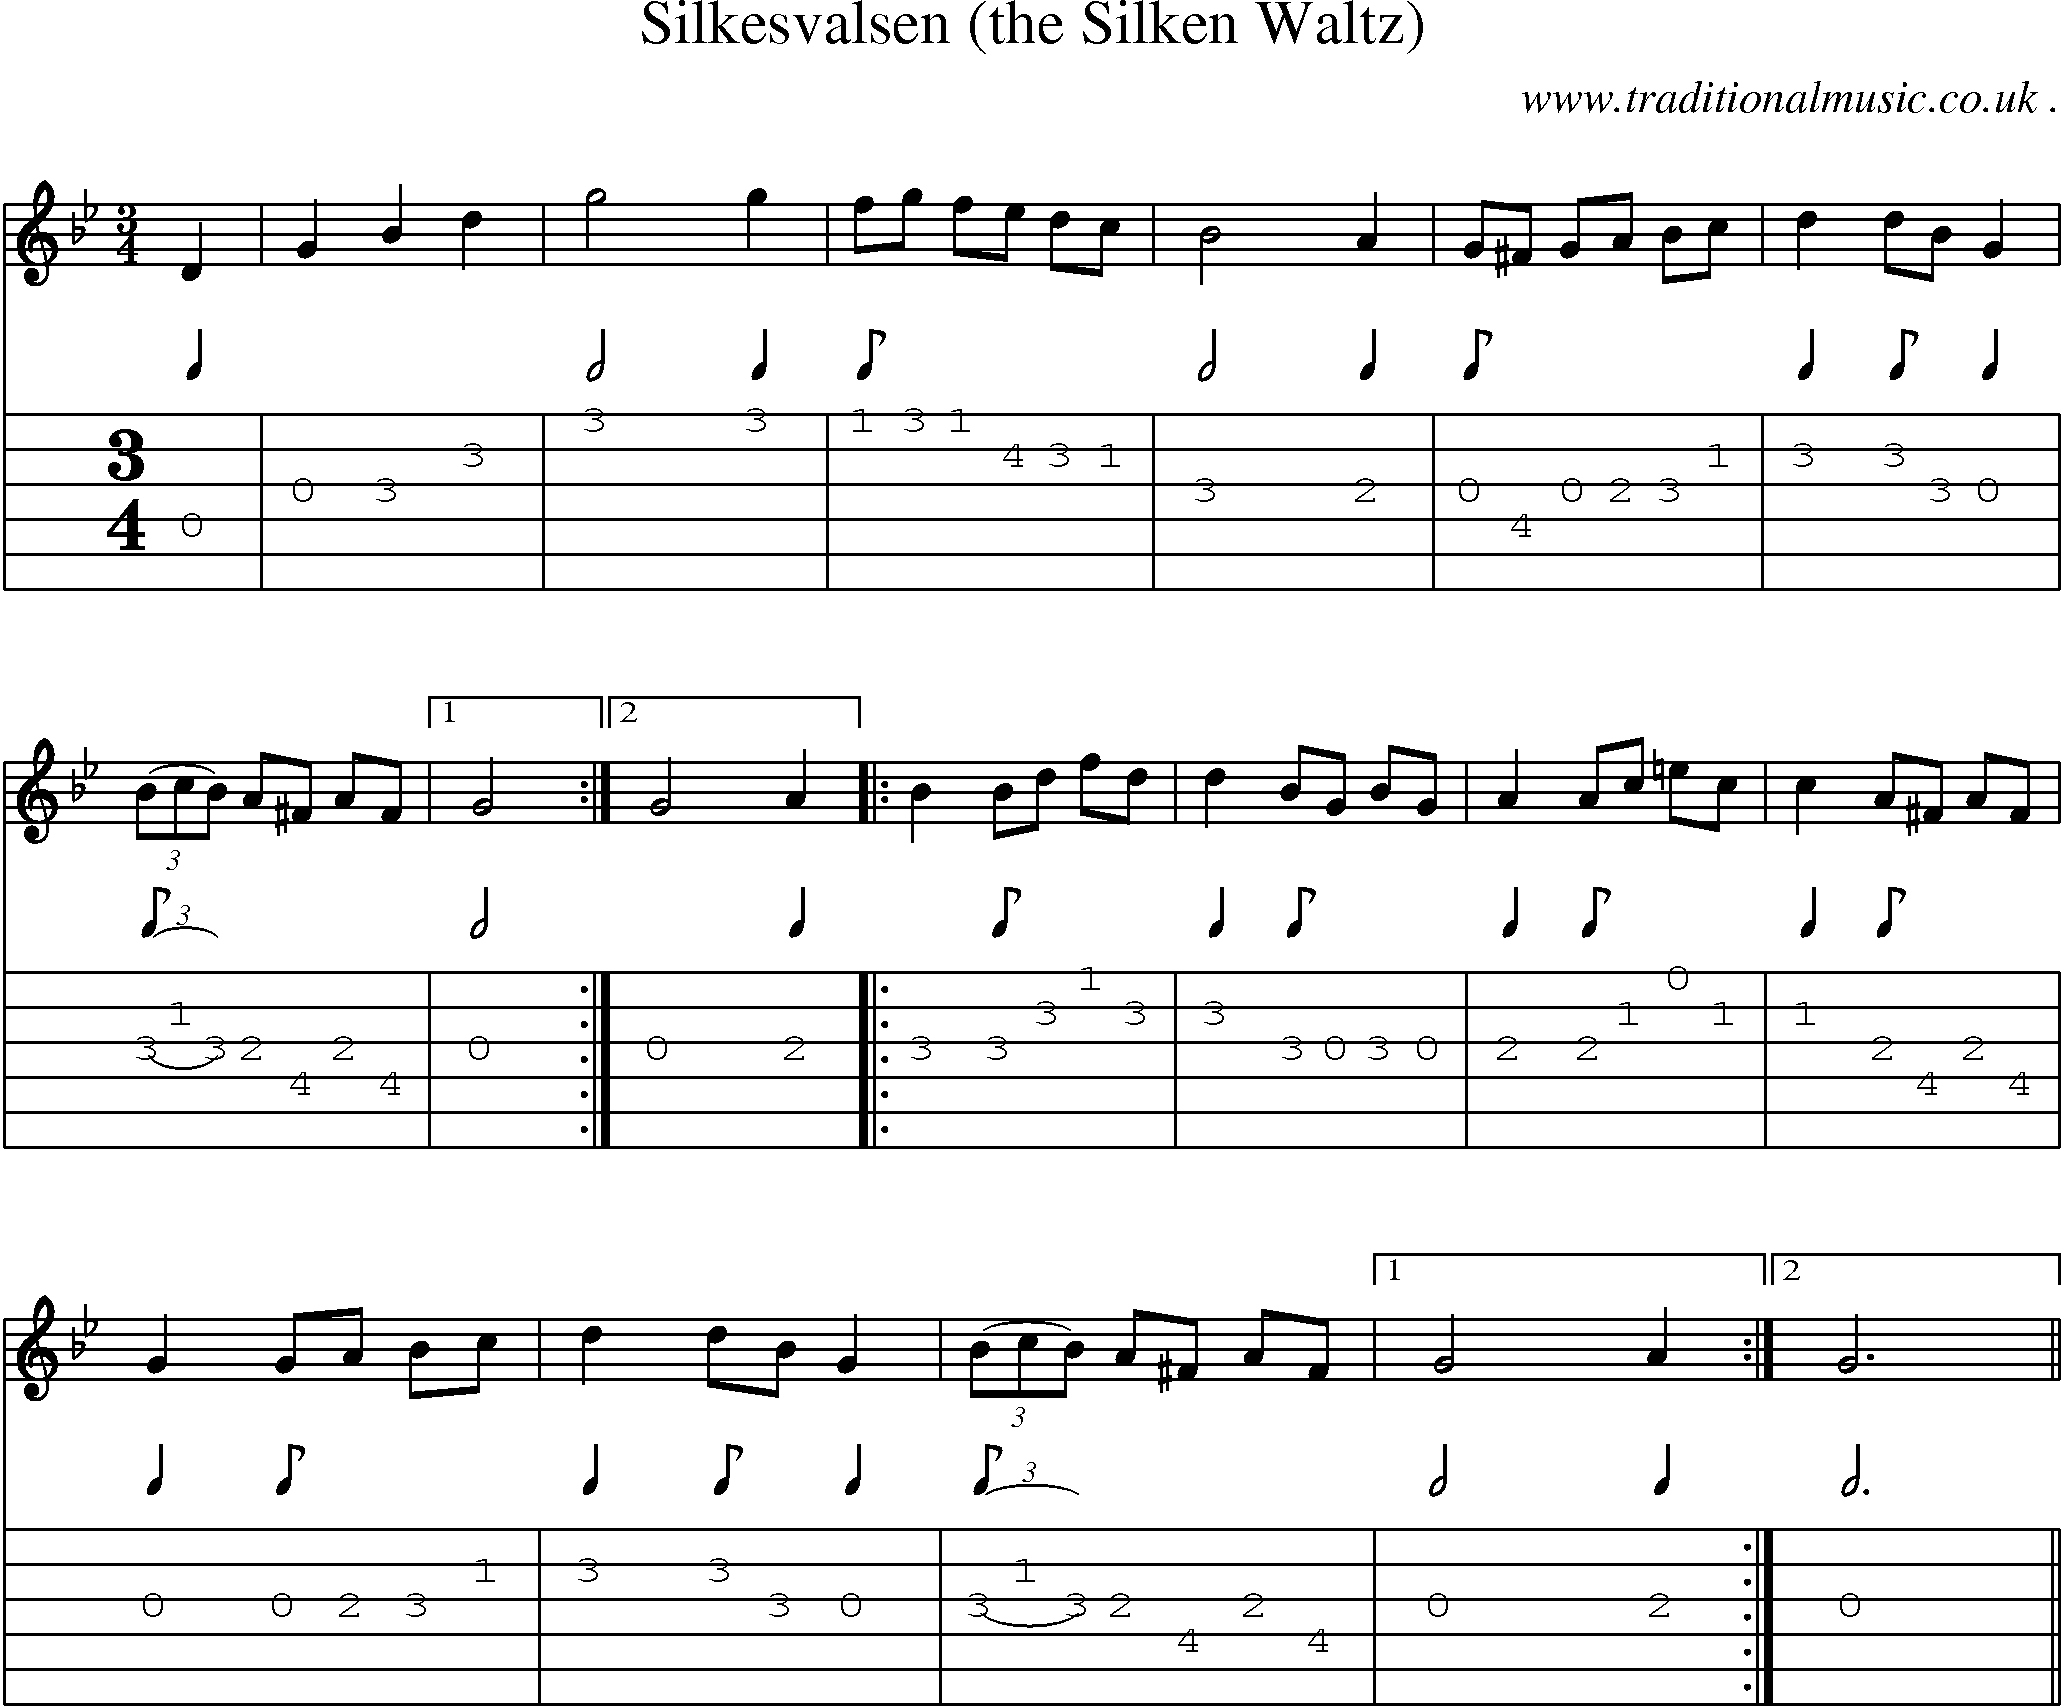 Sheet-Music and Guitar Tabs for Silkesvalsen (the Silken Waltz)